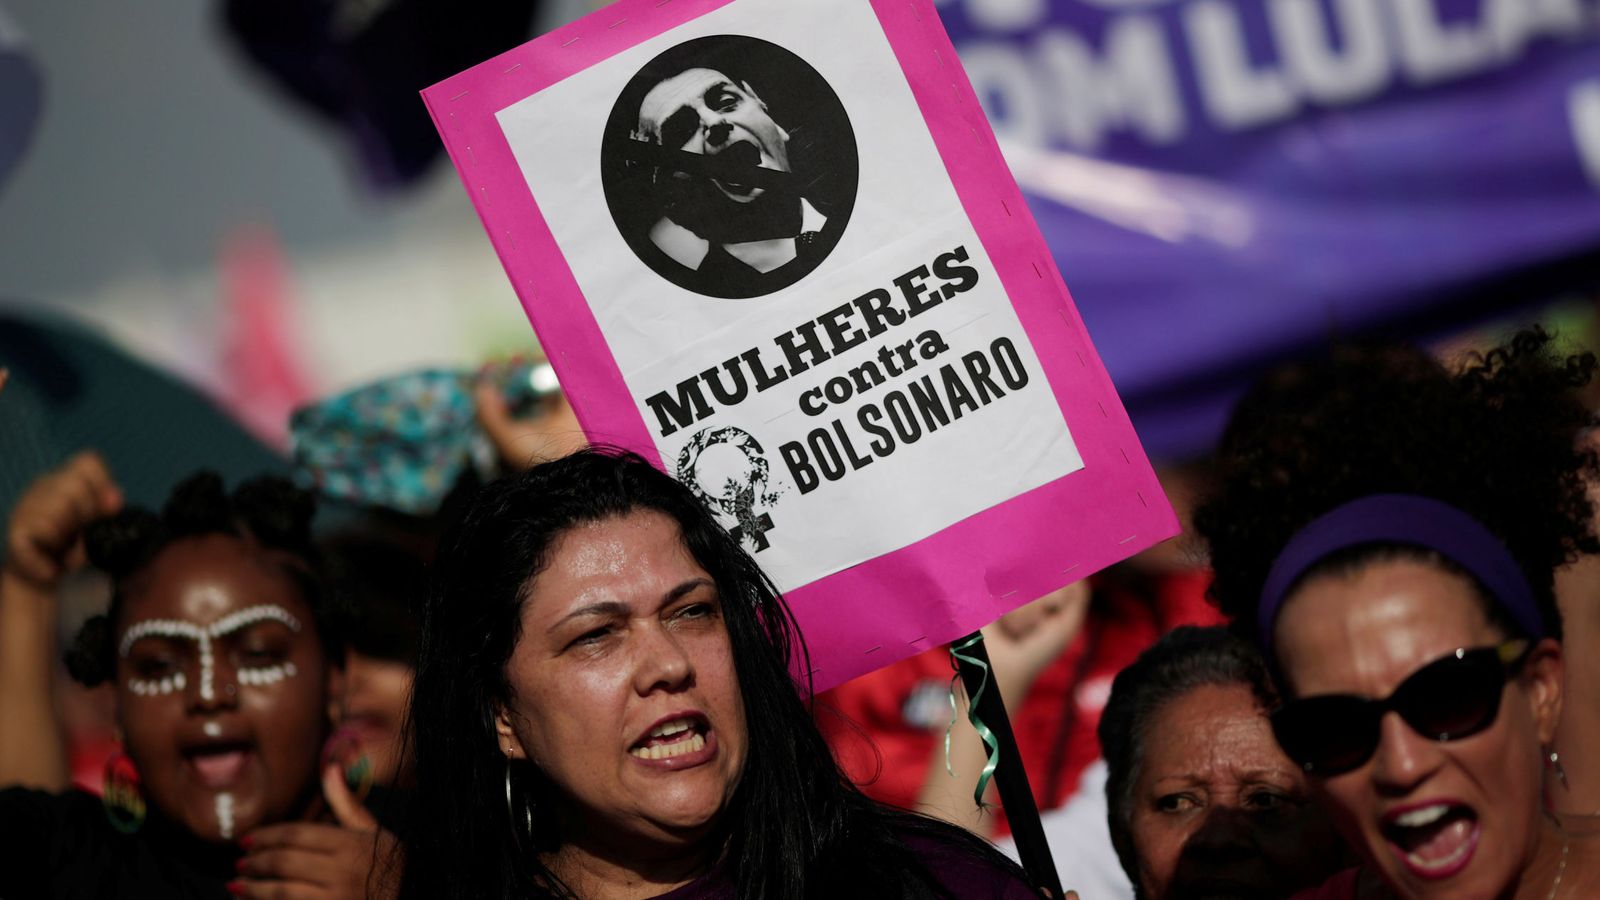 Foto: Una mujer enarbola una pancarta contra Bolsonaro durante las protestas en Brasilia, el 29 de septiembre de 2018. (Reuters)